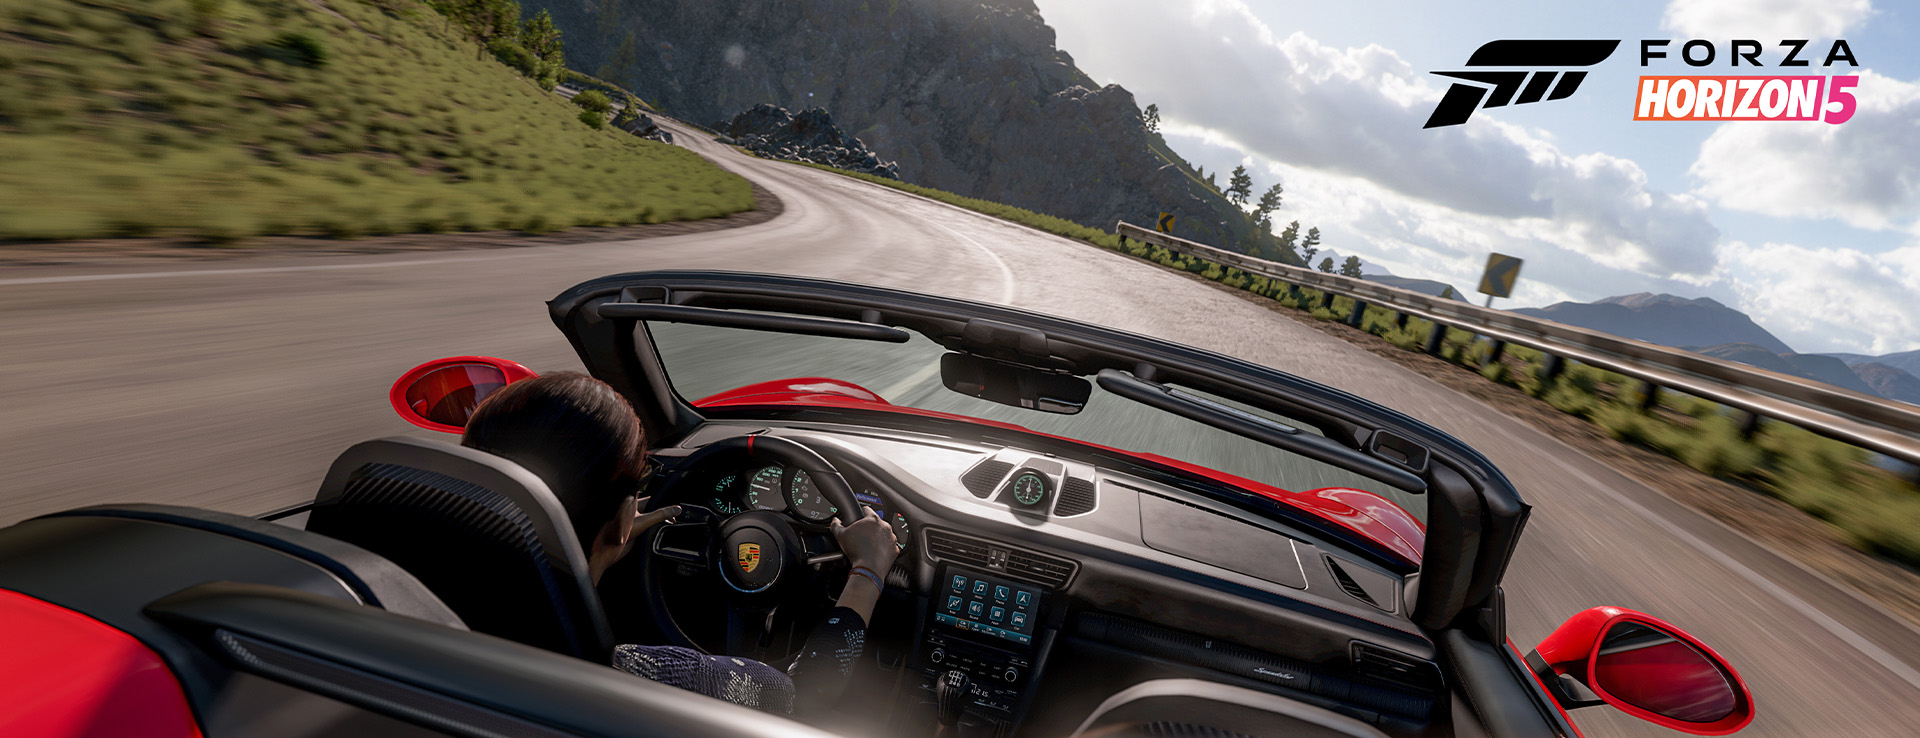 Red Porsche 911 Speedster in Forza Horizon 5 game